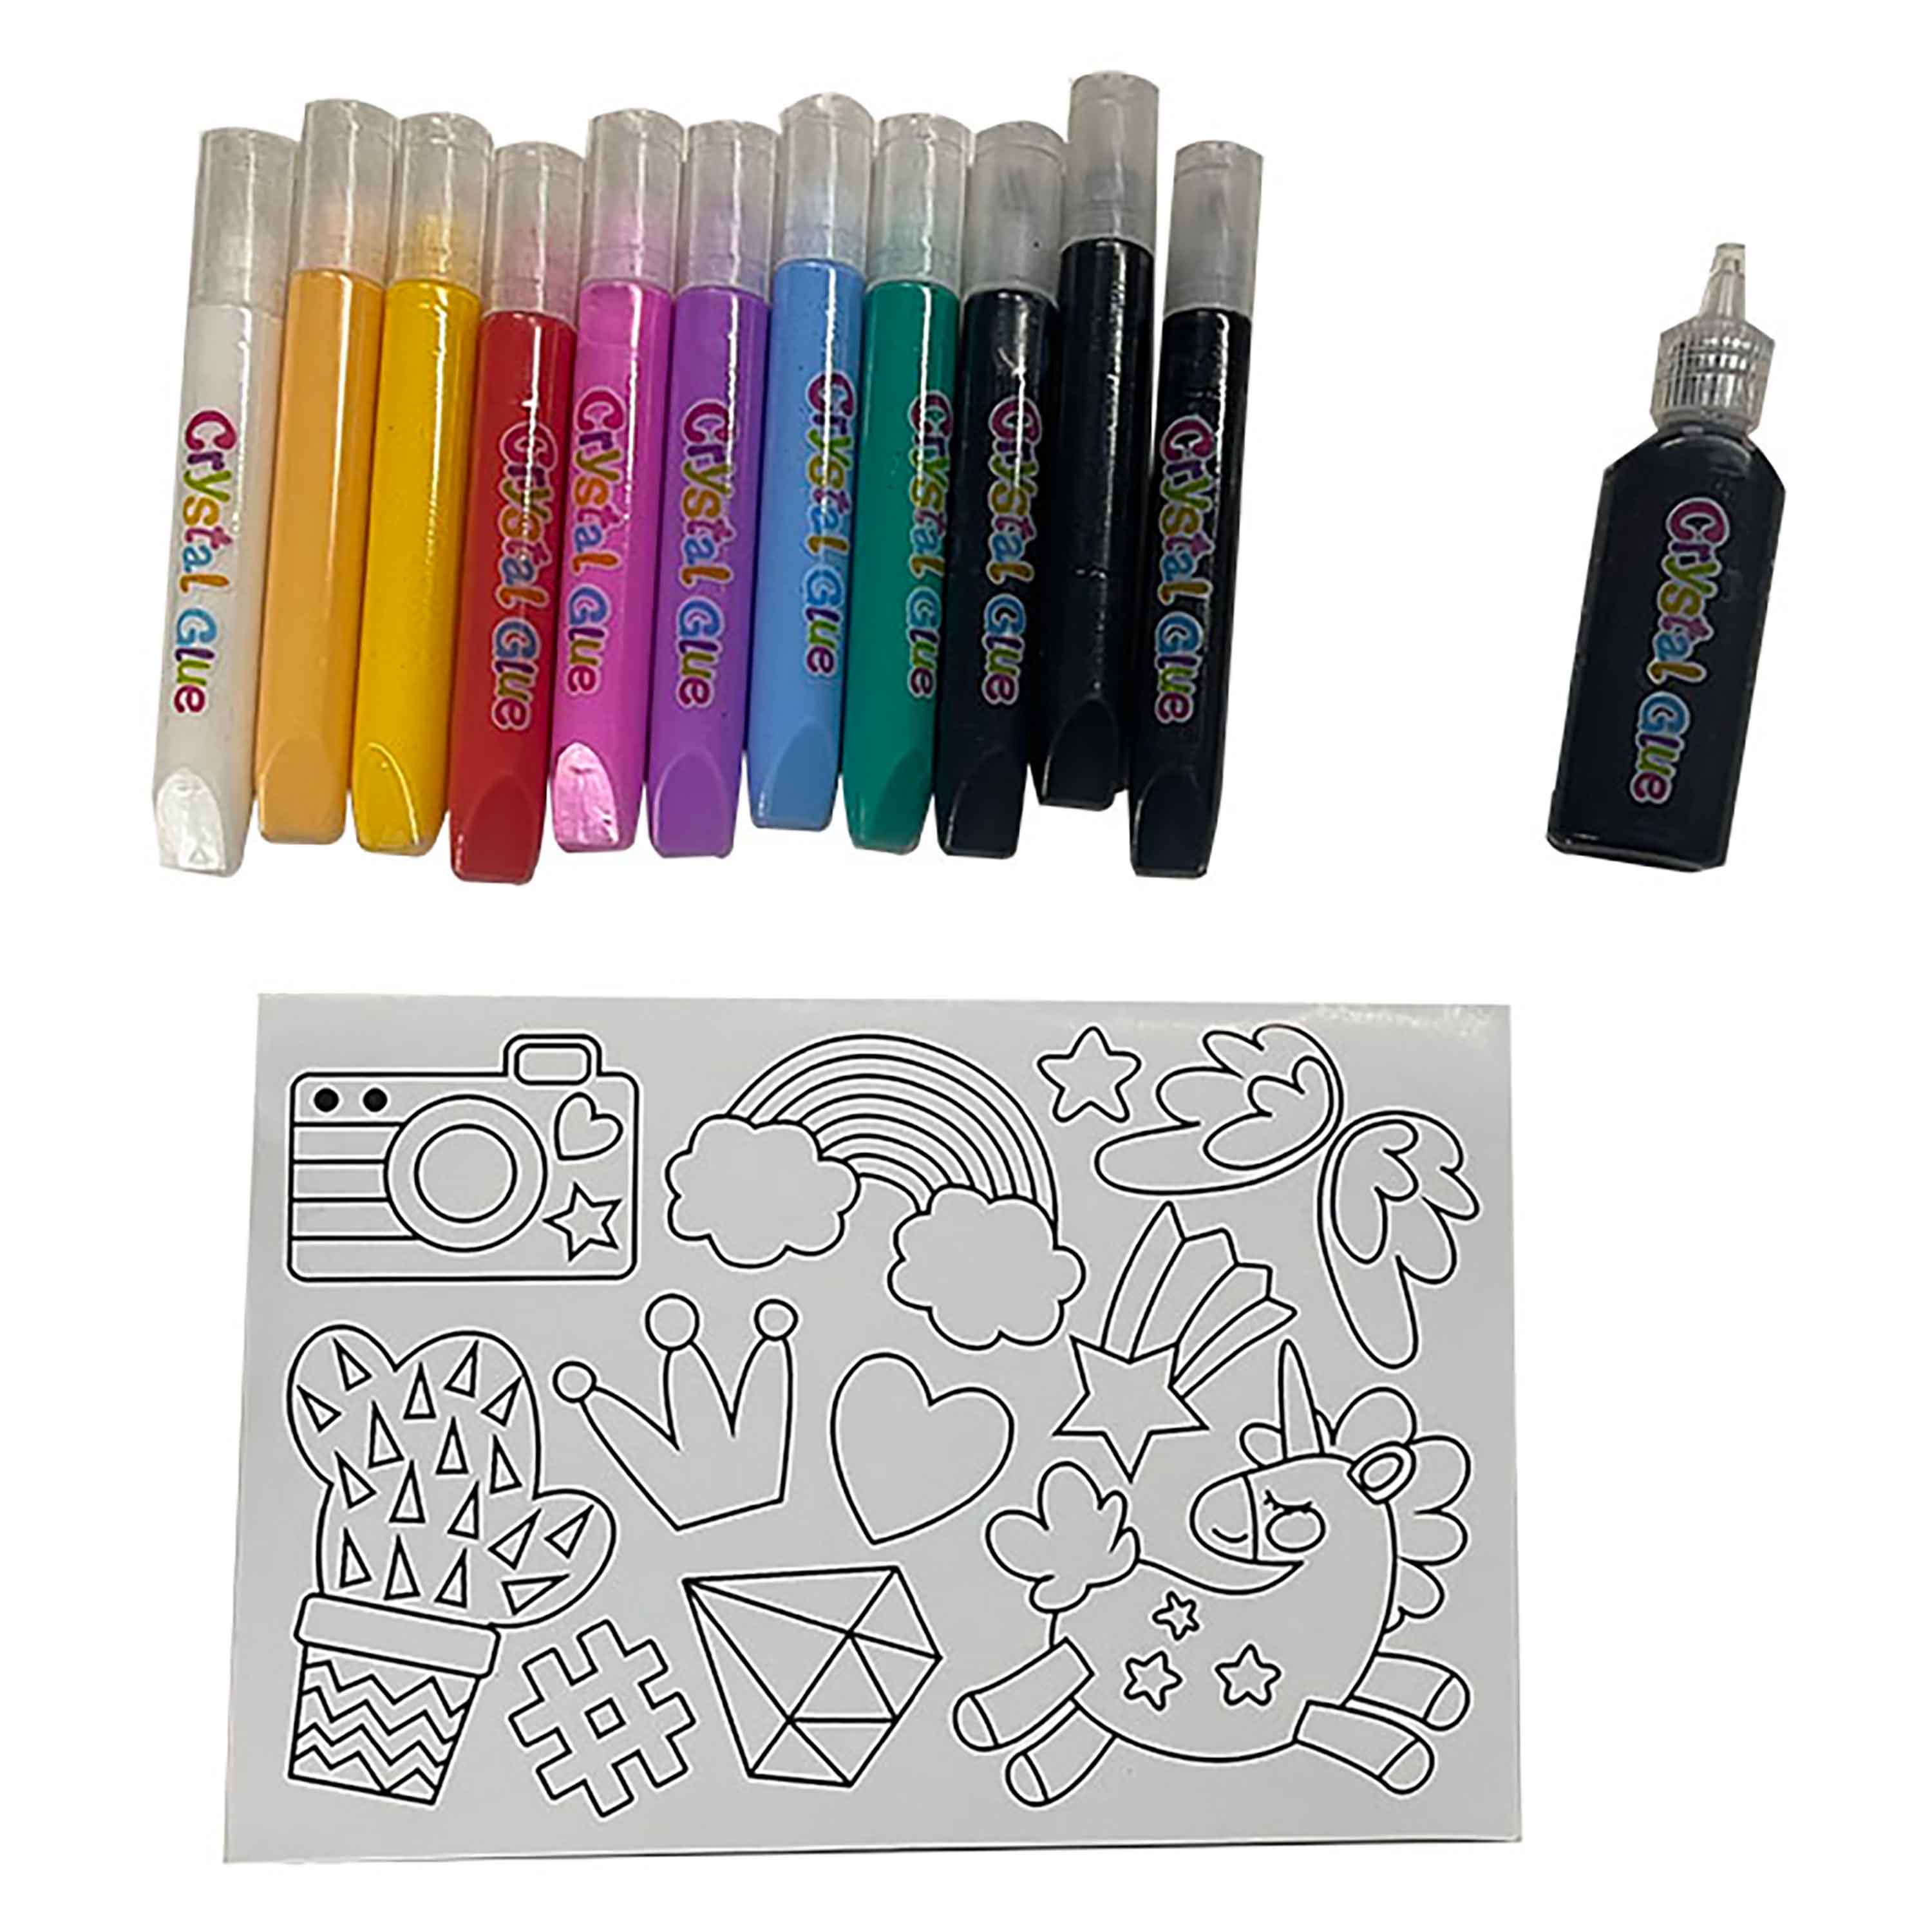 Comprar Set de pegamentos, Pen+Gear, dibujar sobre cristal. Modelo: DY04509, Walmart Costa Rica - Maxi Palí